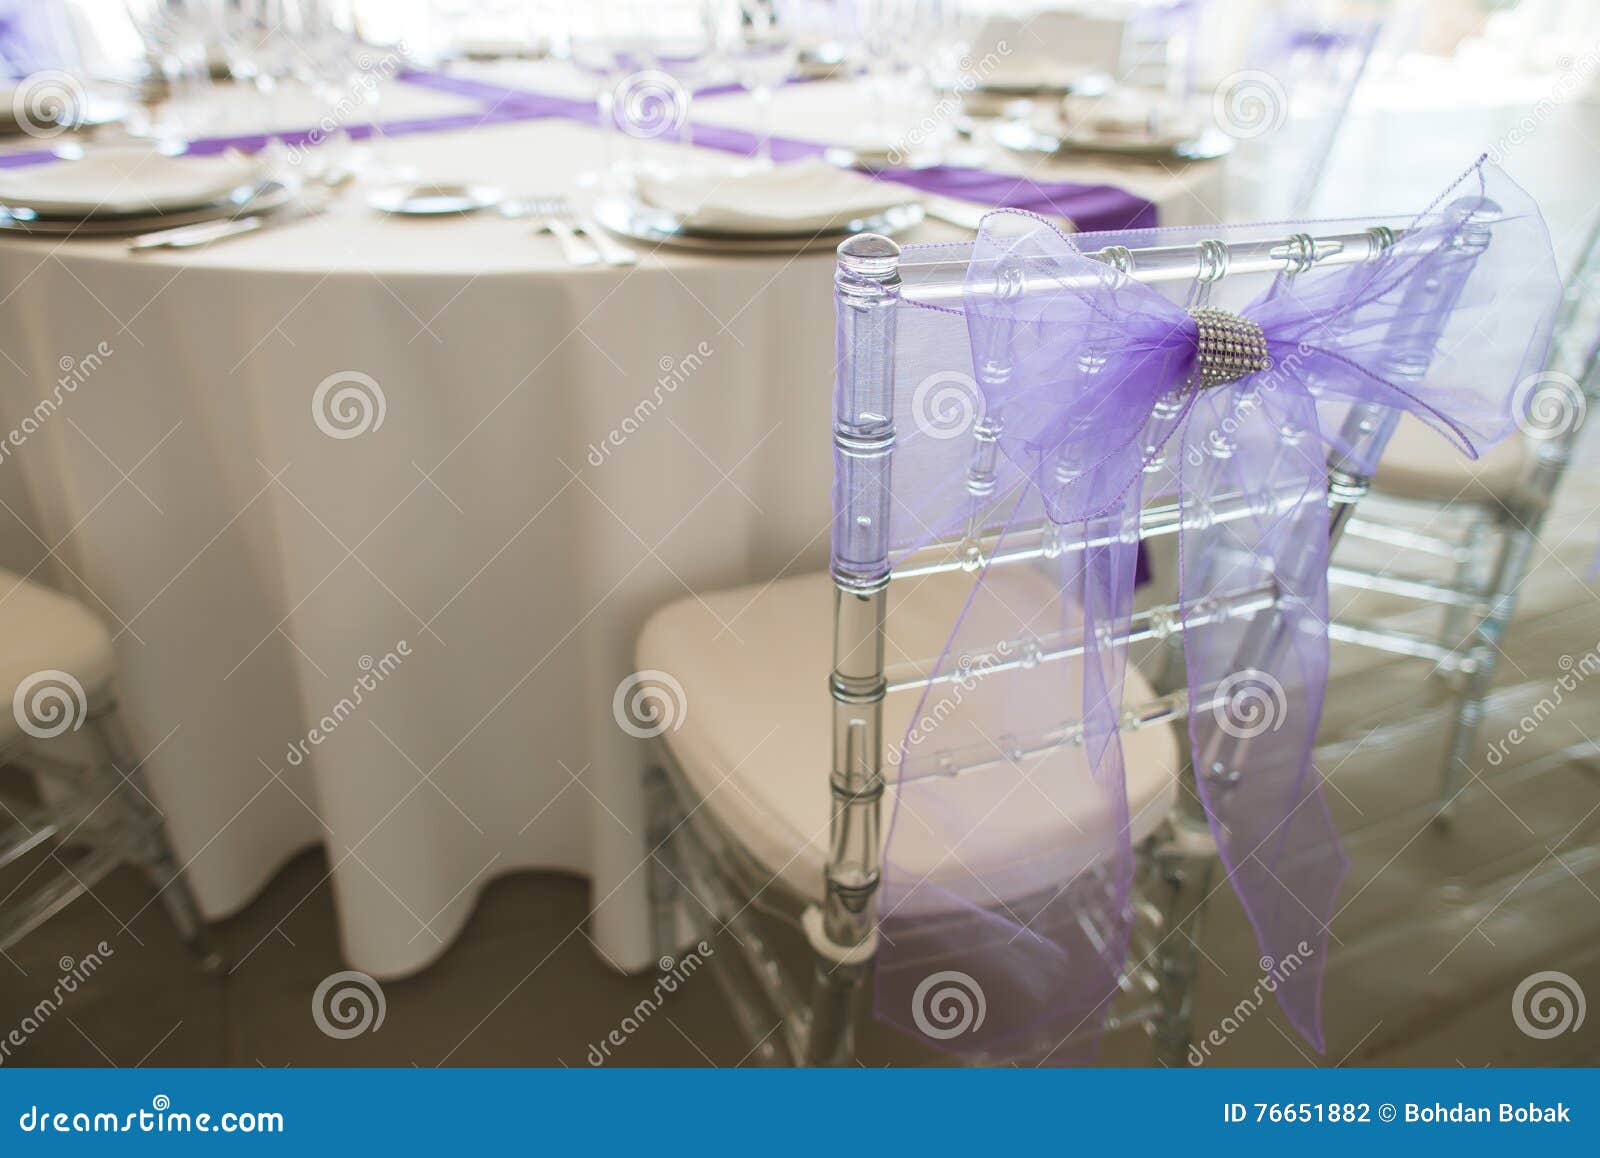 Κομψός πίνακας που τίθεται στο λεπτό εστιατόριο. Άσπρος εξυπηρετούμενος πίνακας σε ένα εστιατόριο σε έναν γαμήλιο εορτασμό Ασημένια μαχαιροπήρουνα, πιάτο, γυαλιά σε ένα άσπρο τραπεζομάντιλο με τις ιώδεις κορδέλλες